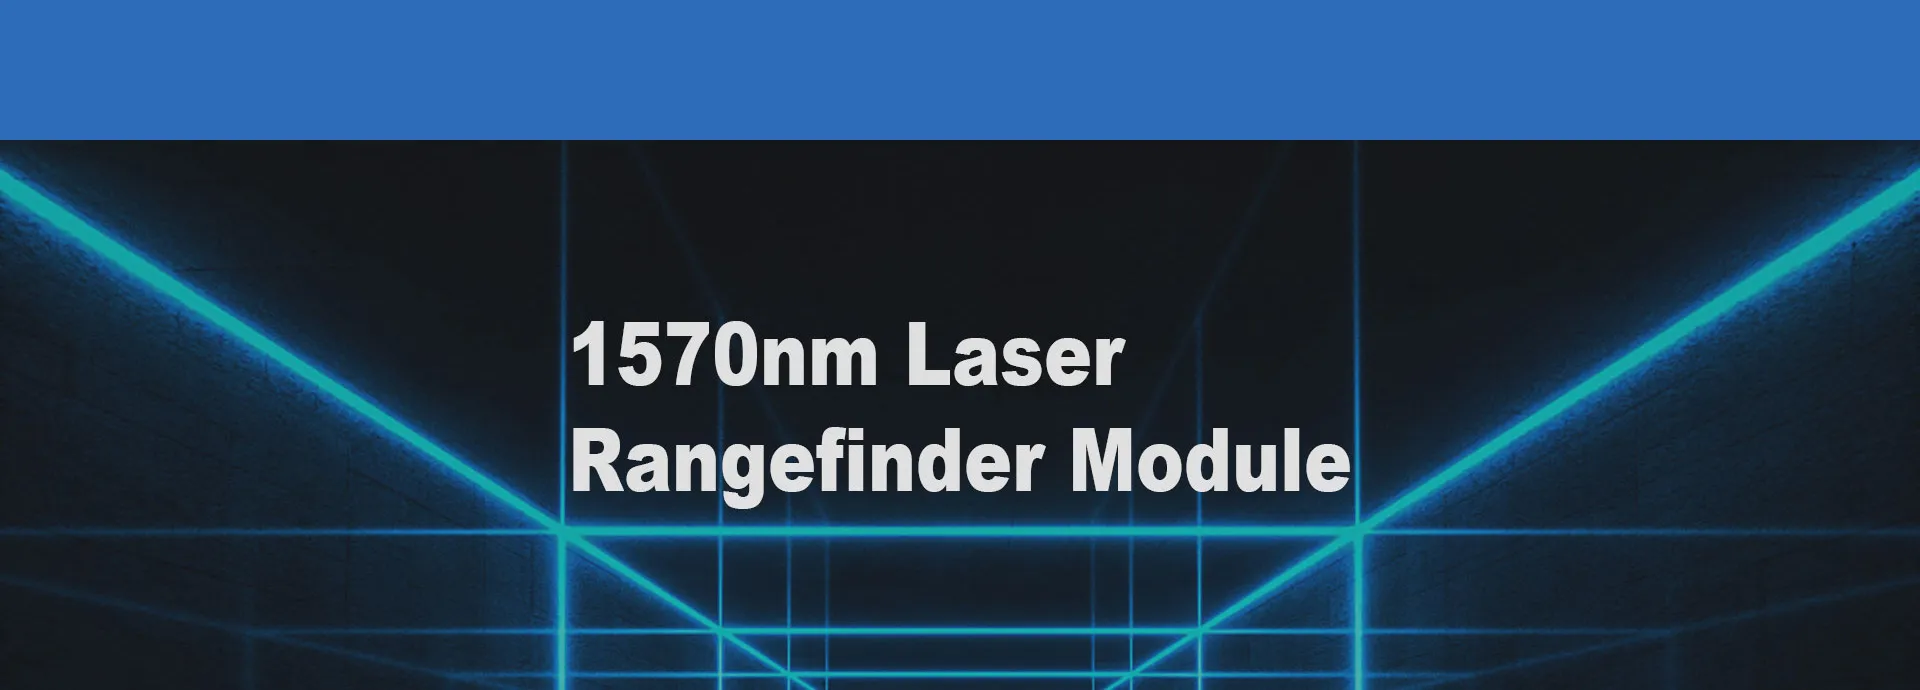 120 km:n laseretäisyysmittarimoduuli